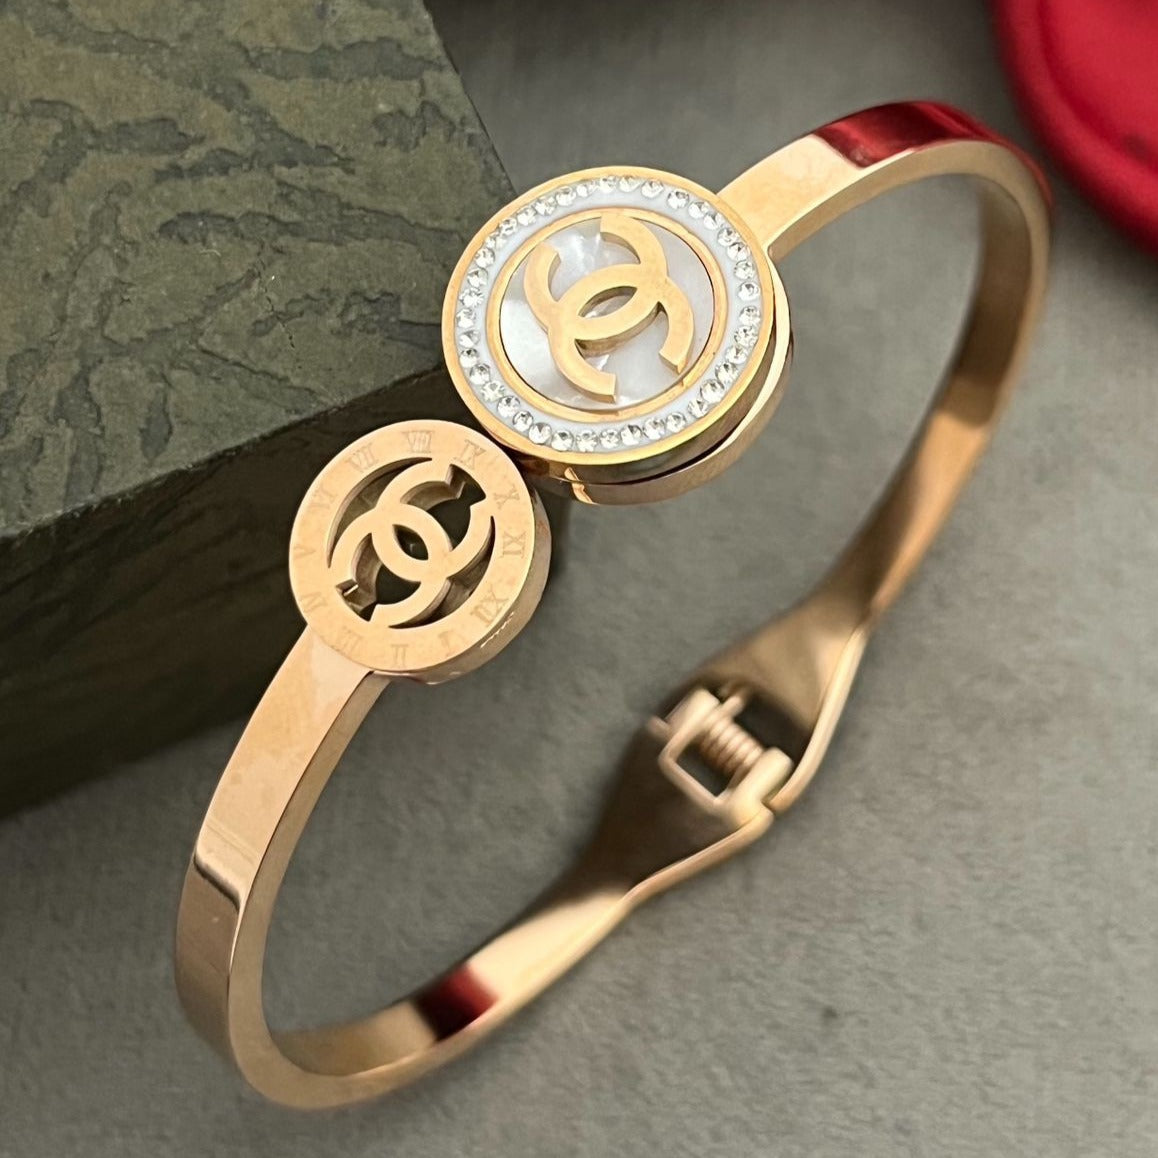 Cartier LOVE Bracelet: A Small Token of Eternal Affection for Women